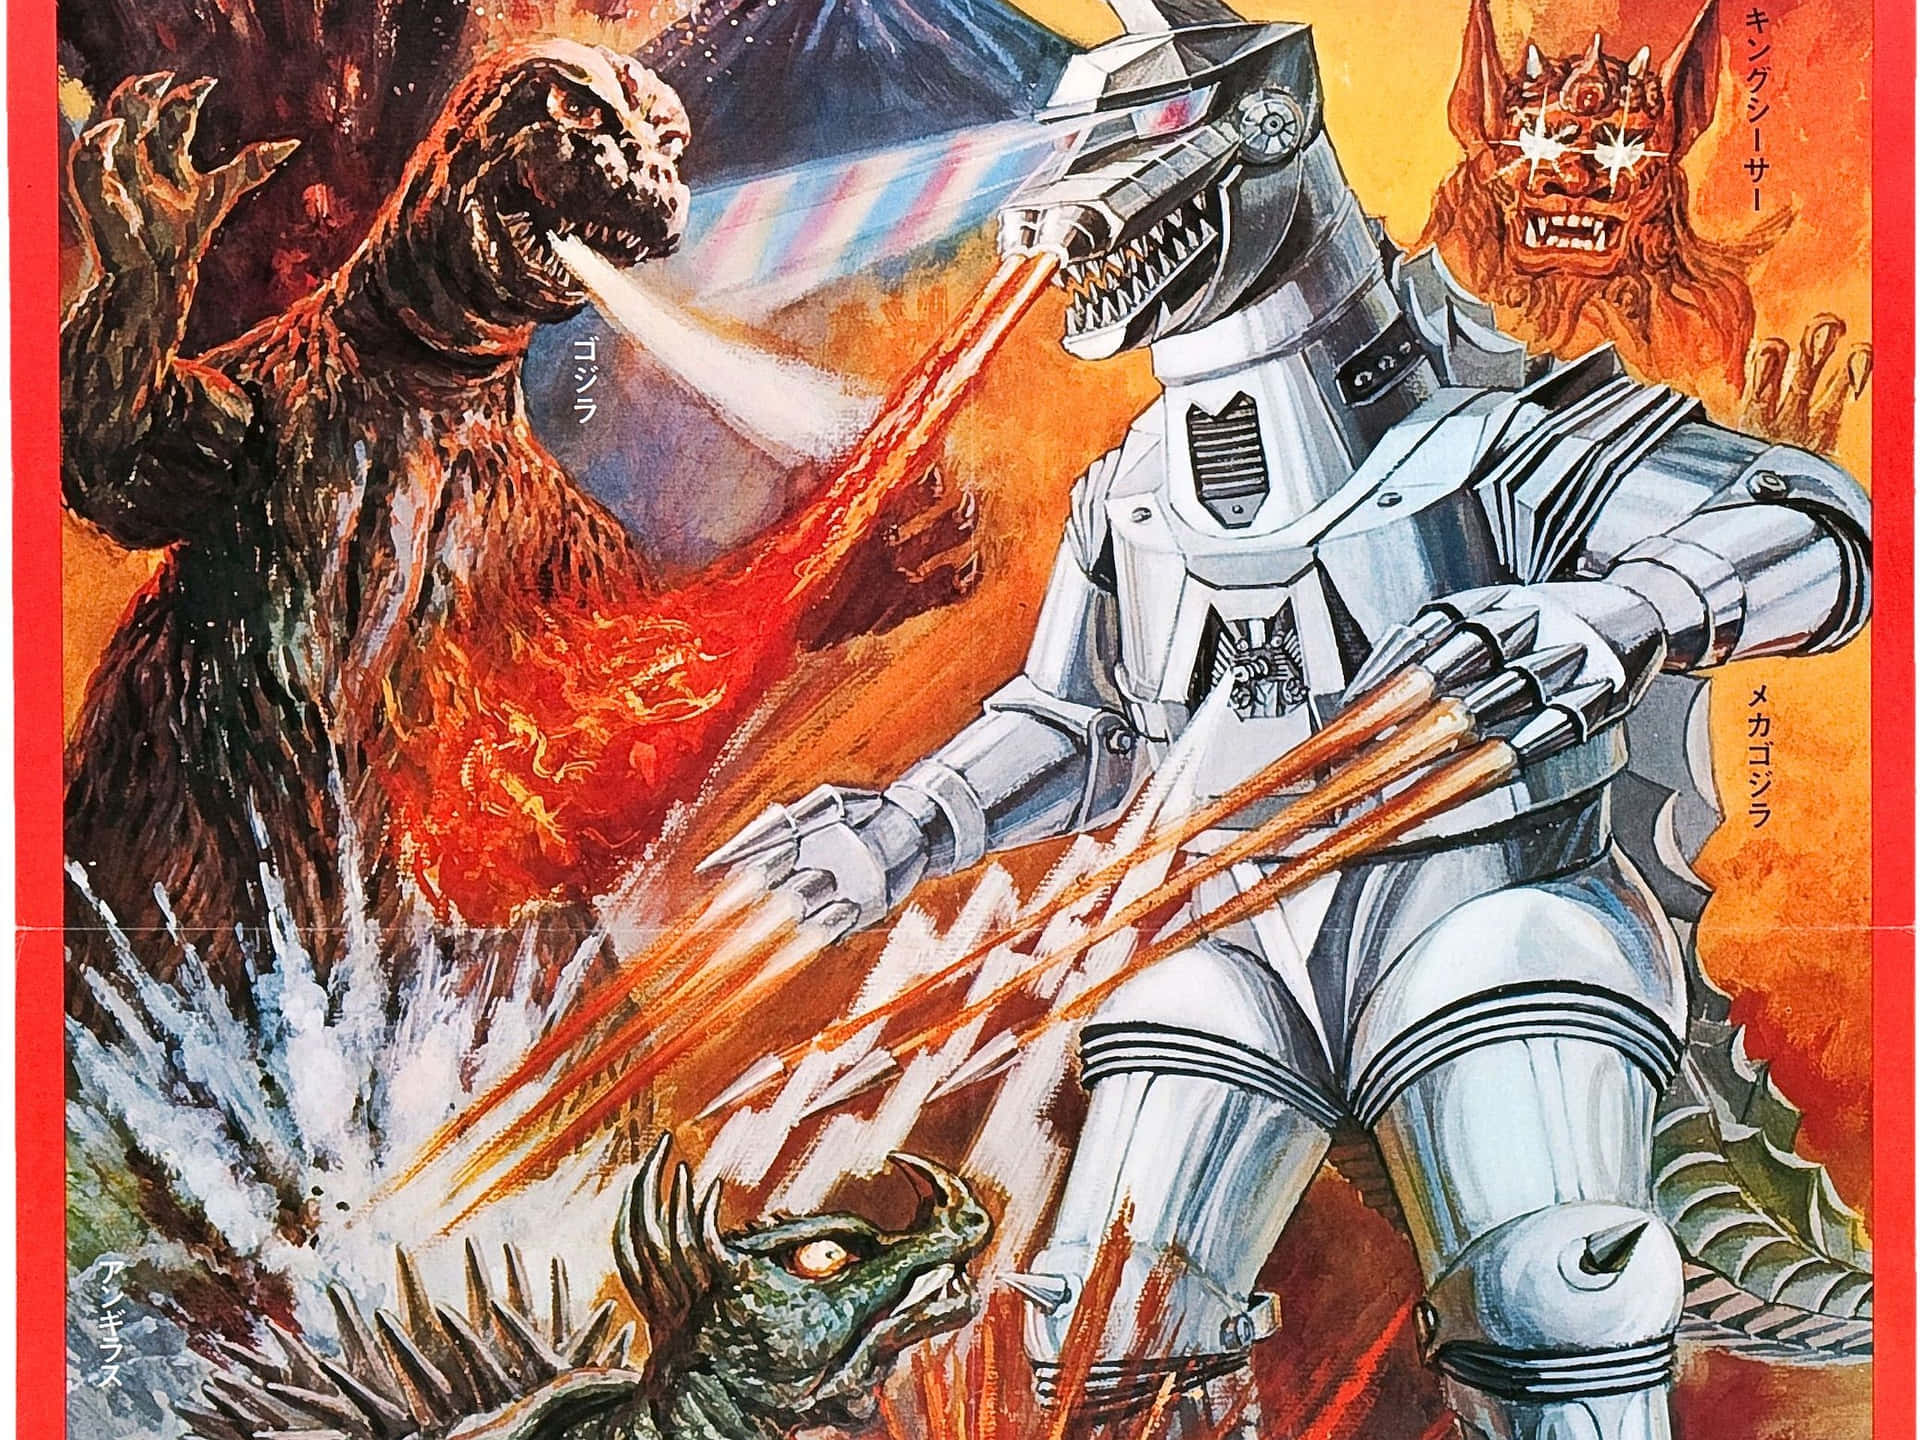 Futuristic Robot Godzilla dominating the city landscape Wallpaper